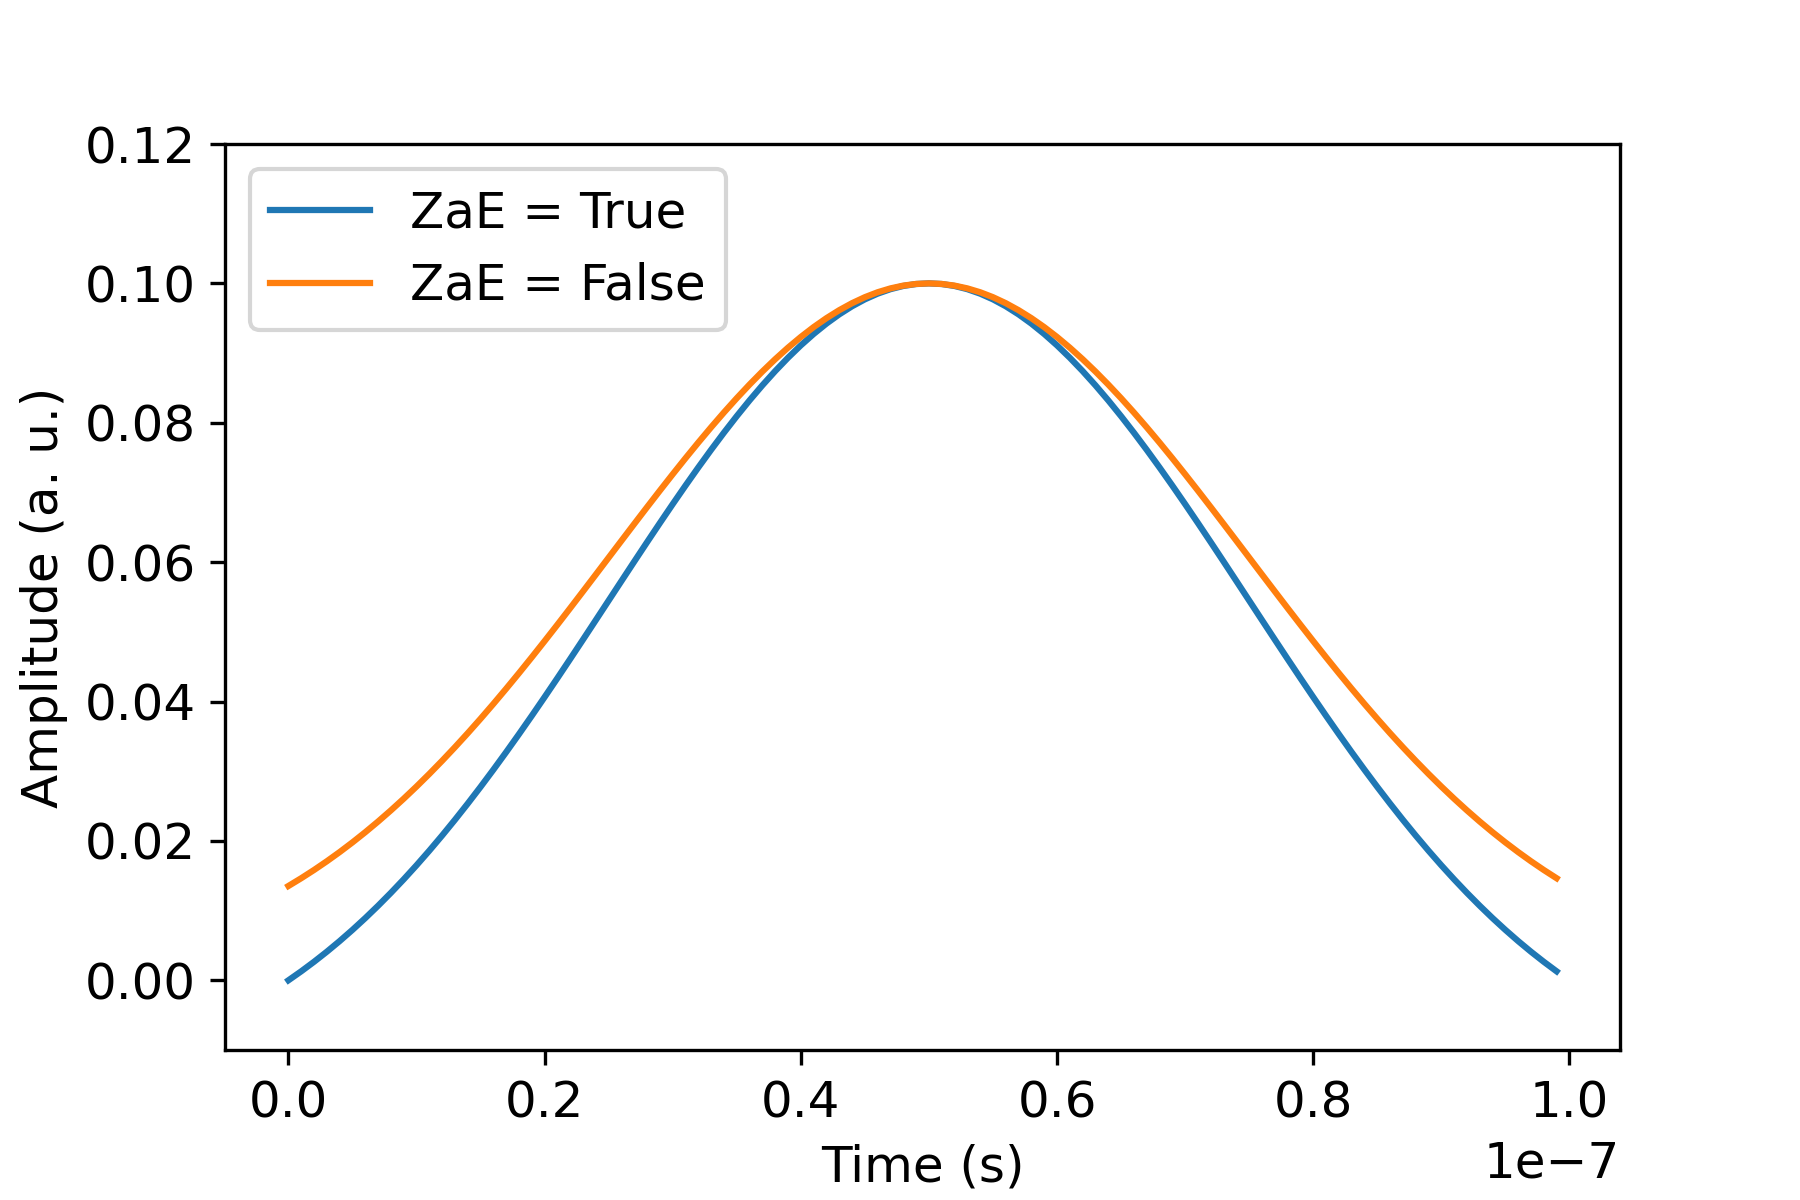 Gráfico que muestra la amplitud a lo largo del tiempo en dos casos: zAe = verdadero (curva inferior) y zAe = falso (curva superior). Las curvas tienen forma de campana y alcanzan su punto máximo en torno a 0,5 segundos con una amplitud de 0,10 a. u..